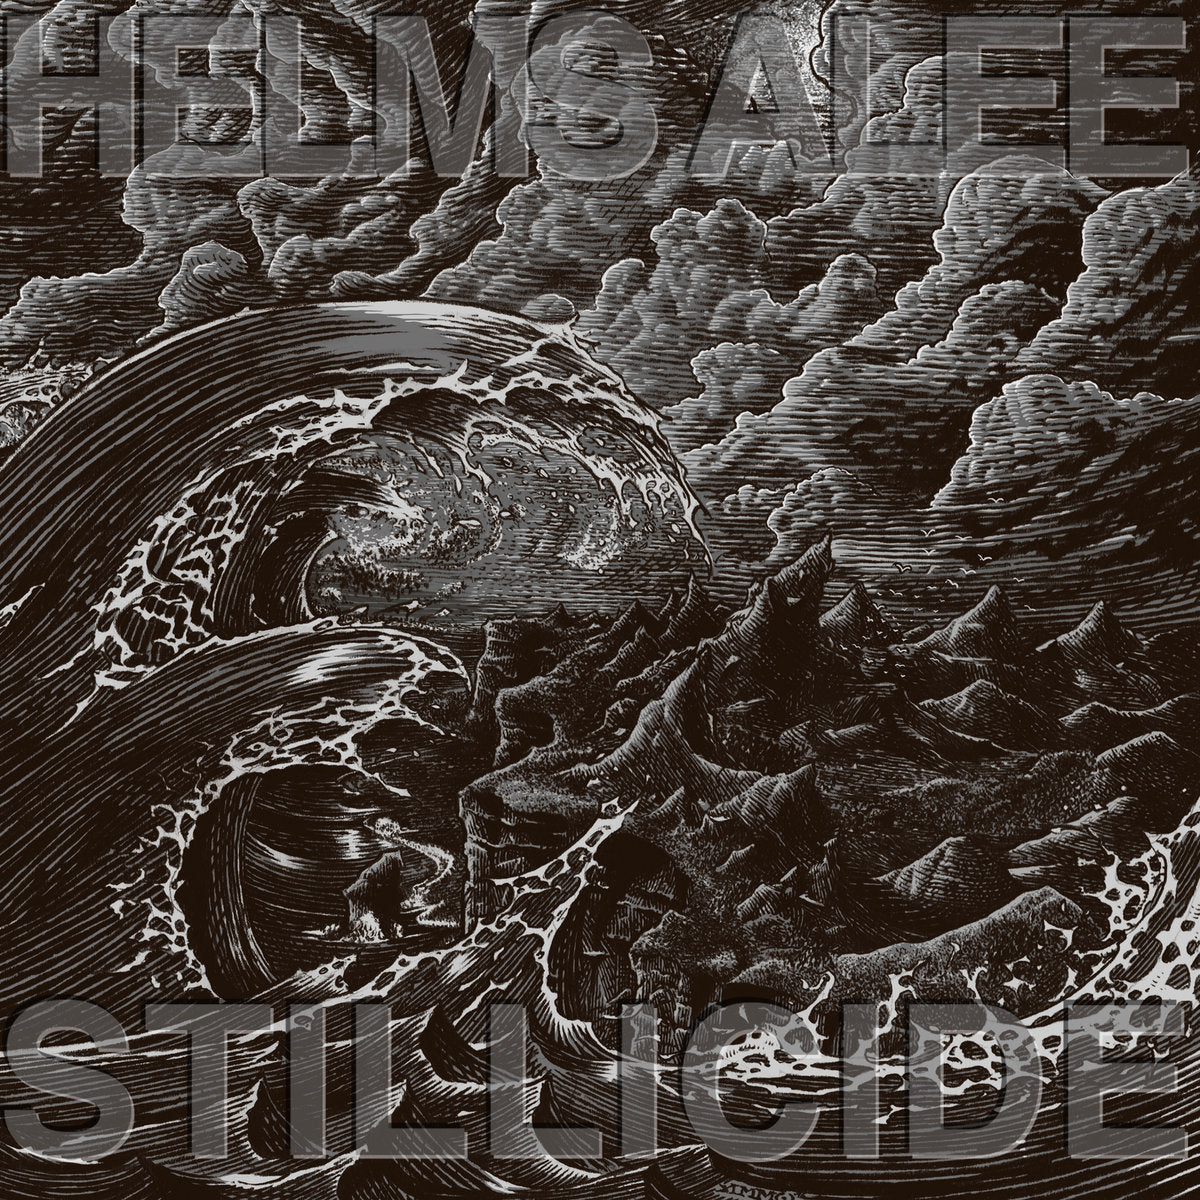 HELMS ALEE "Stillicide" CD